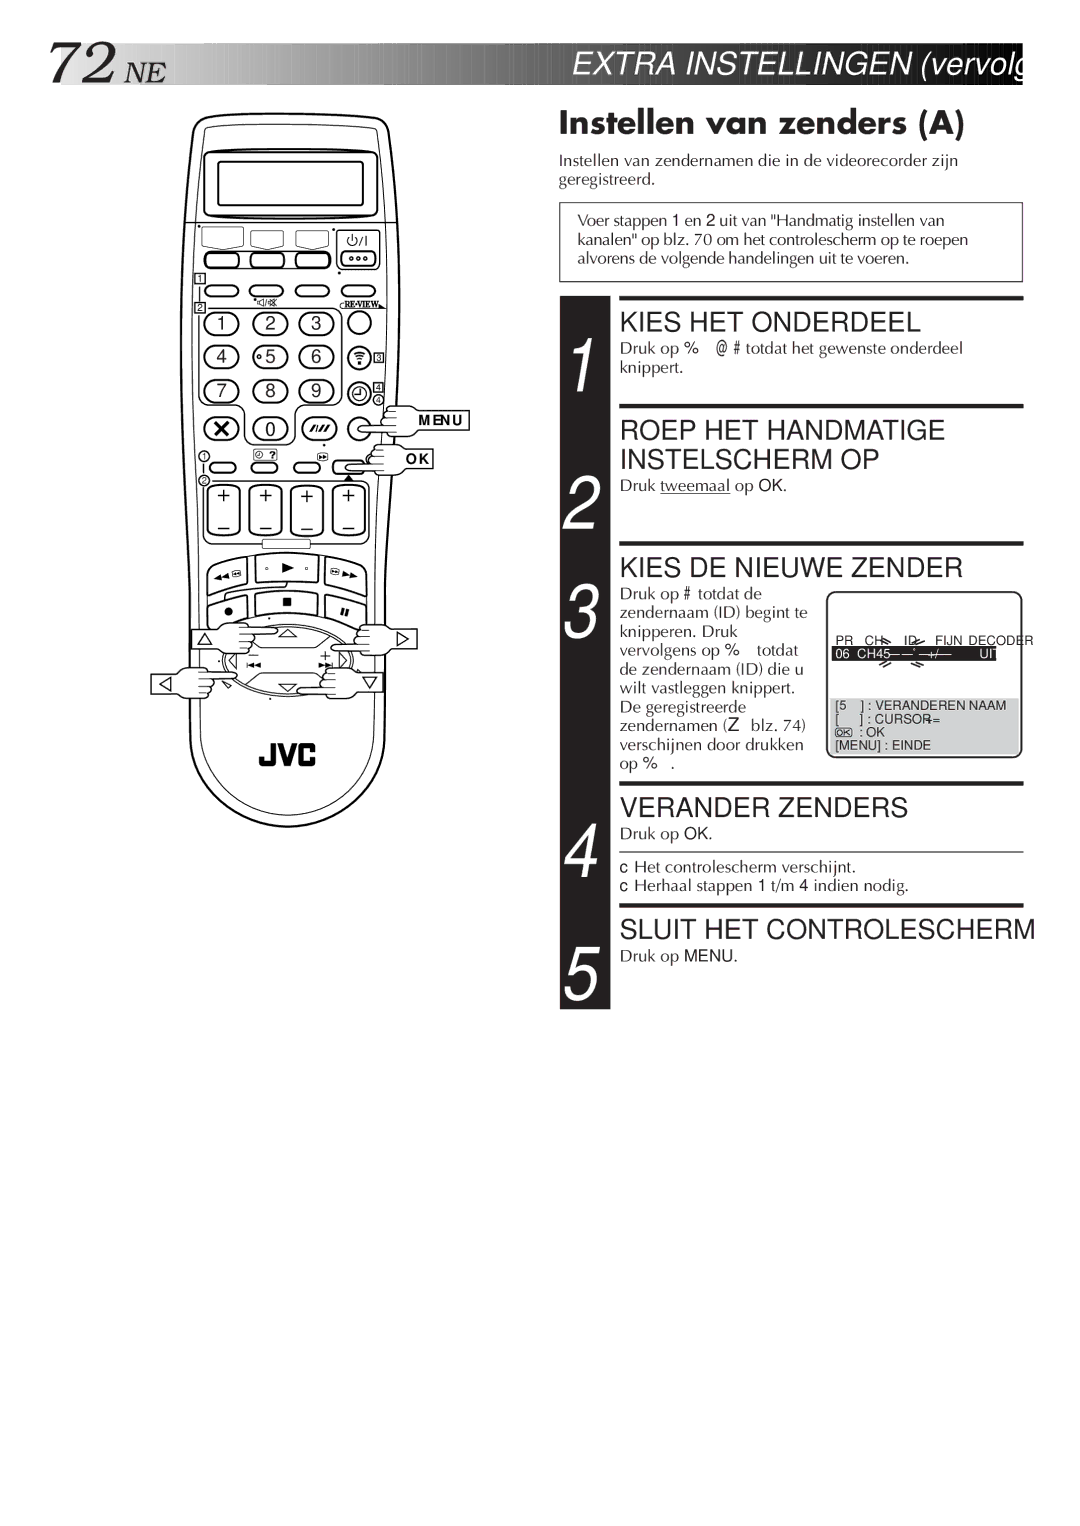 JVC HR-DVS2EU manual Instellen van zenders a, Roep HET Handmatige, Kies DE Nieuwe Zender, Verander Zenders, Instelscherm OP 